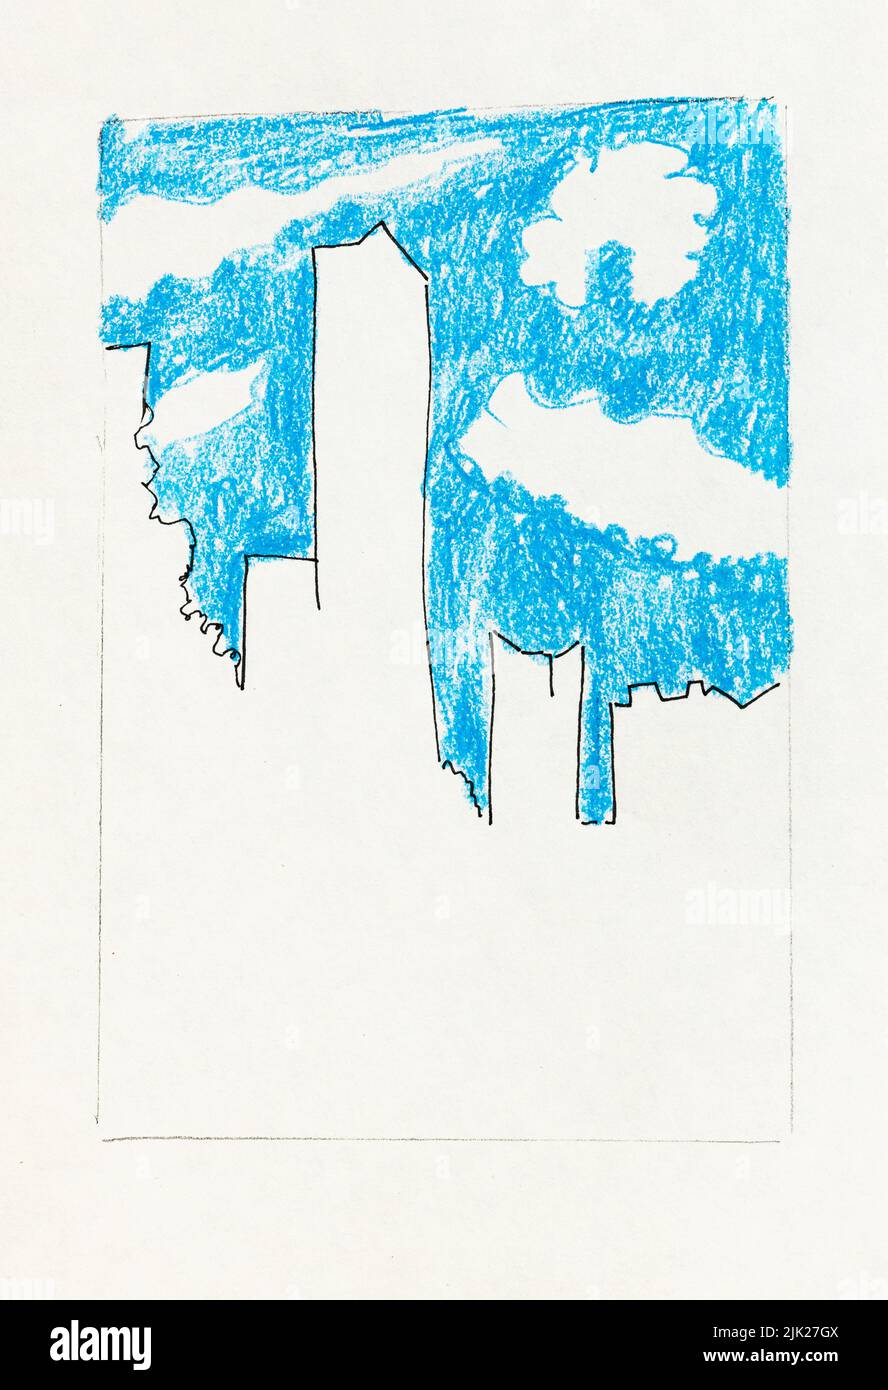 Esquema boceto de la ciudad de Guangzhou China bajo el cielo azul con nubes blancas en mano dibujado con pluma negra y lápices de color sobre viejo blanco texturizado p Foto de stock